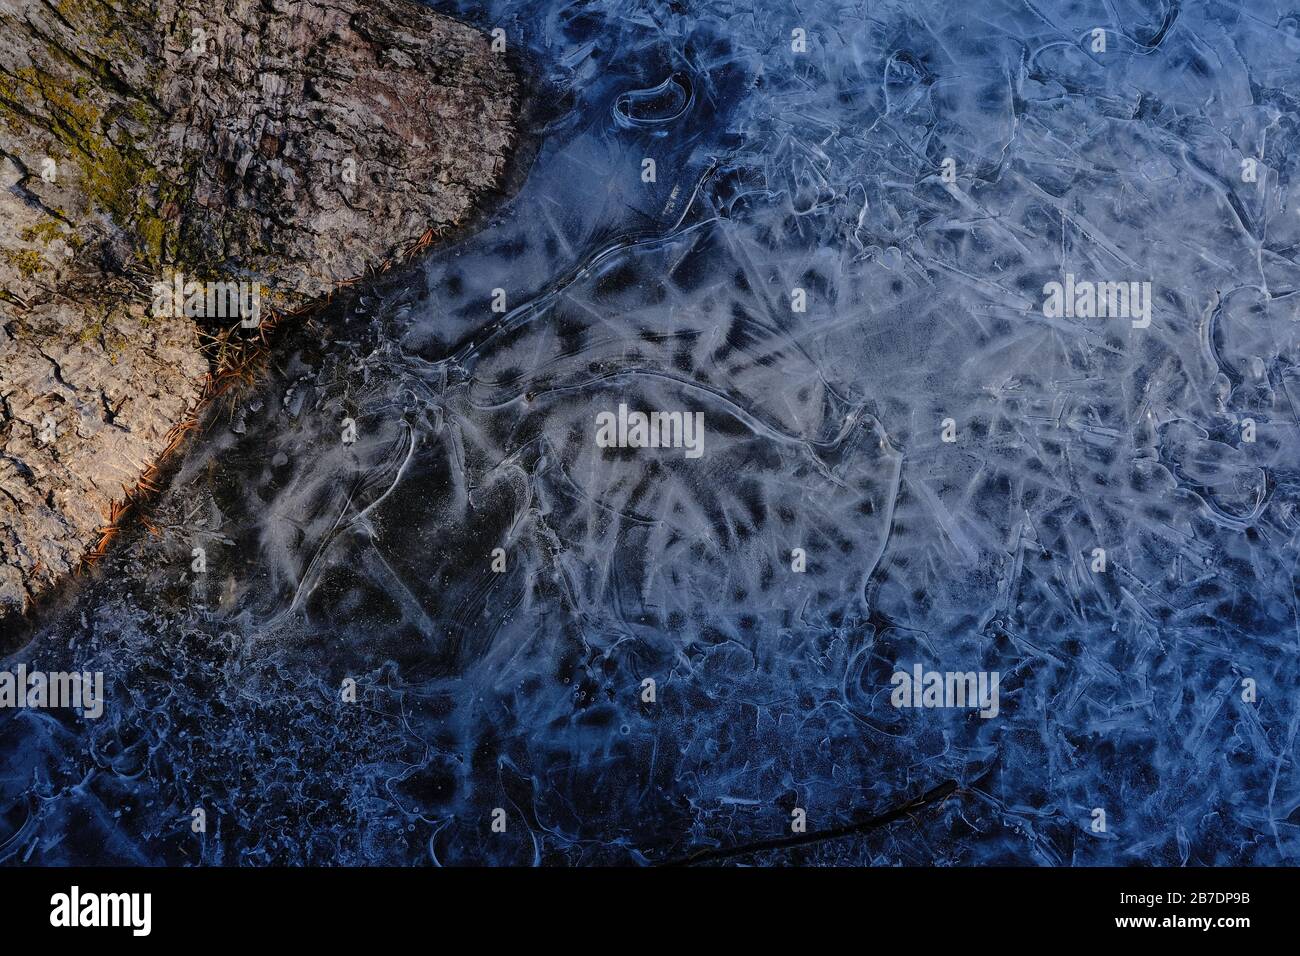 Motifs dans une flaque de glace gelée à la base d'un arbre dans le parc local. Ottawa (Ontario), Canada. Banque D'Images